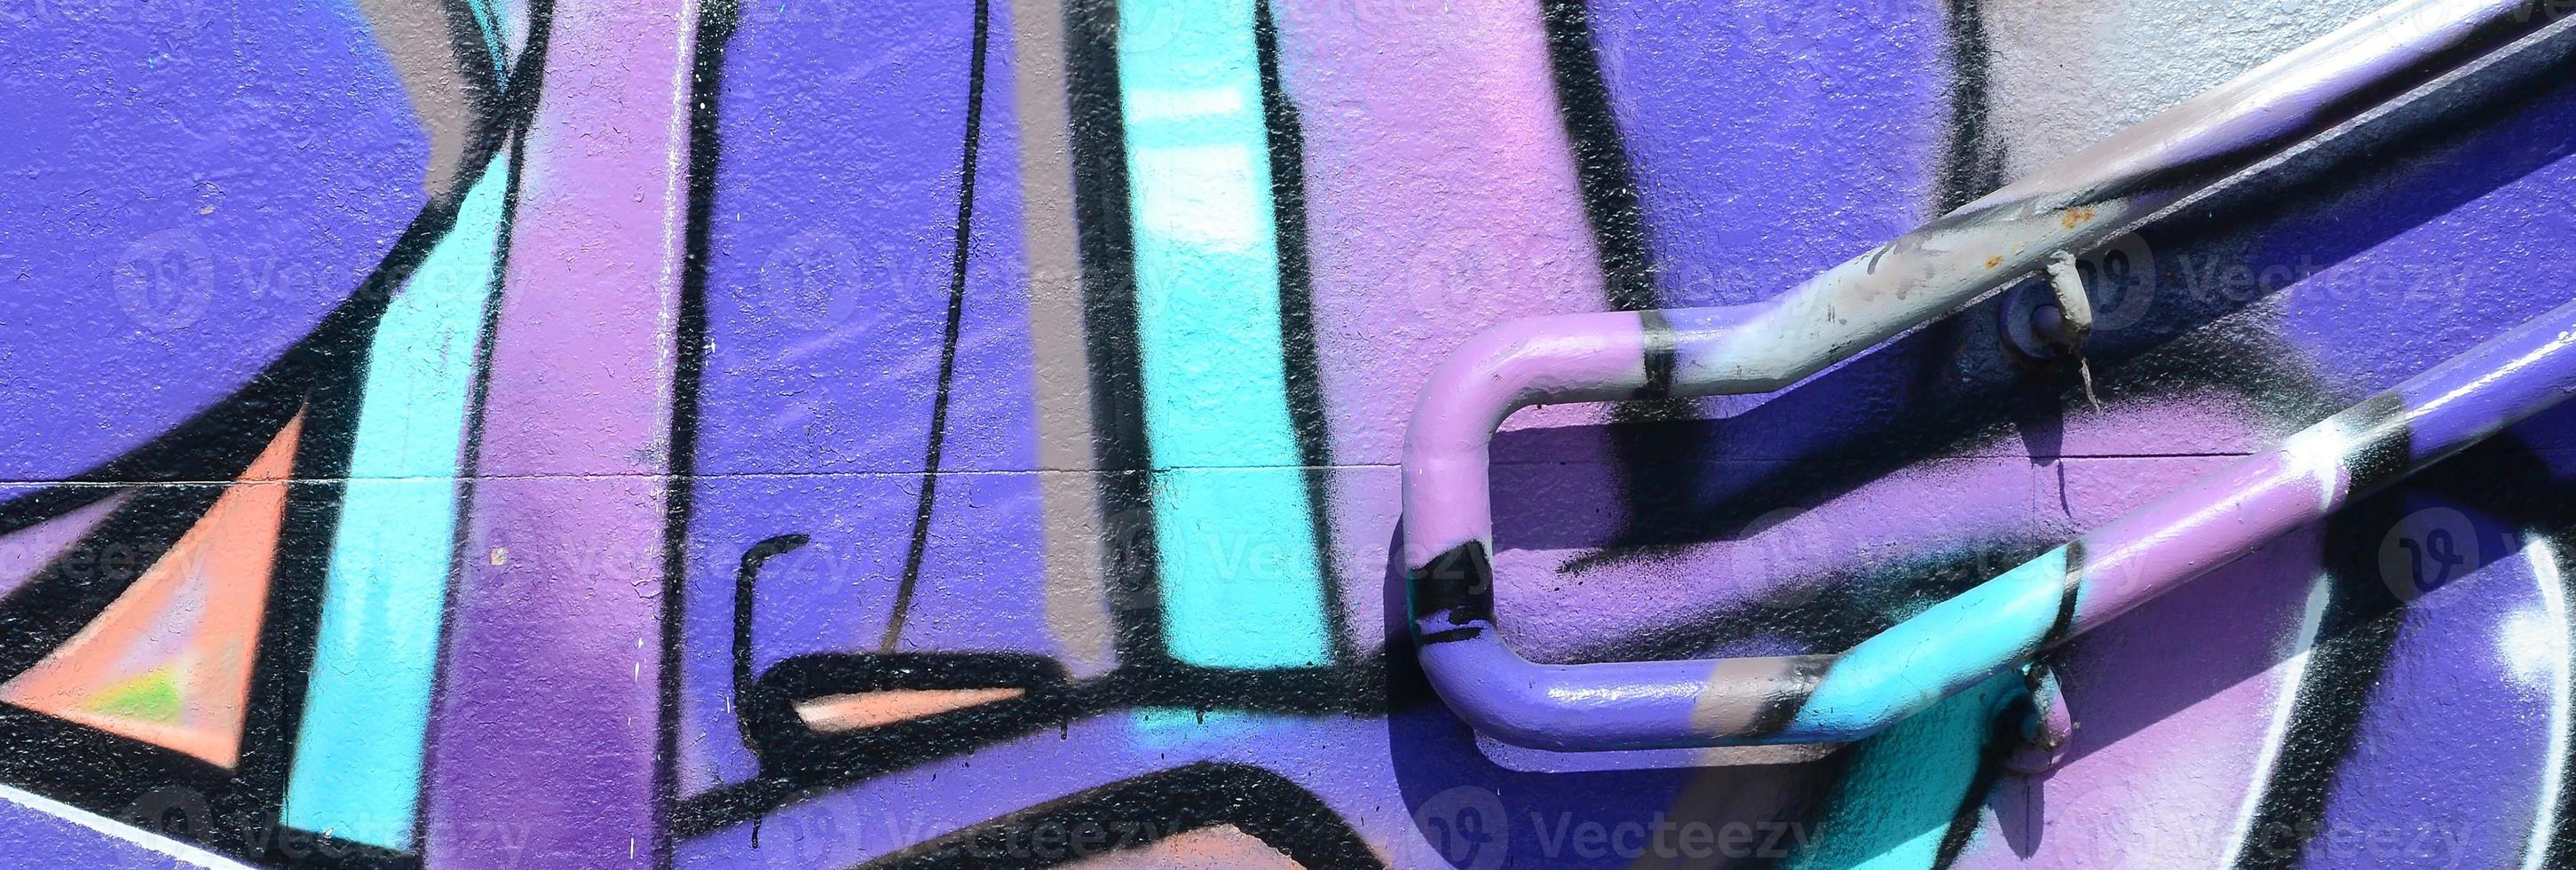 fragmento de dibujos de graffiti. la antigua muralla decorada con manchas de pintura al estilo de la cultura del arte callejero. textura de fondo coloreada en tonos morados foto